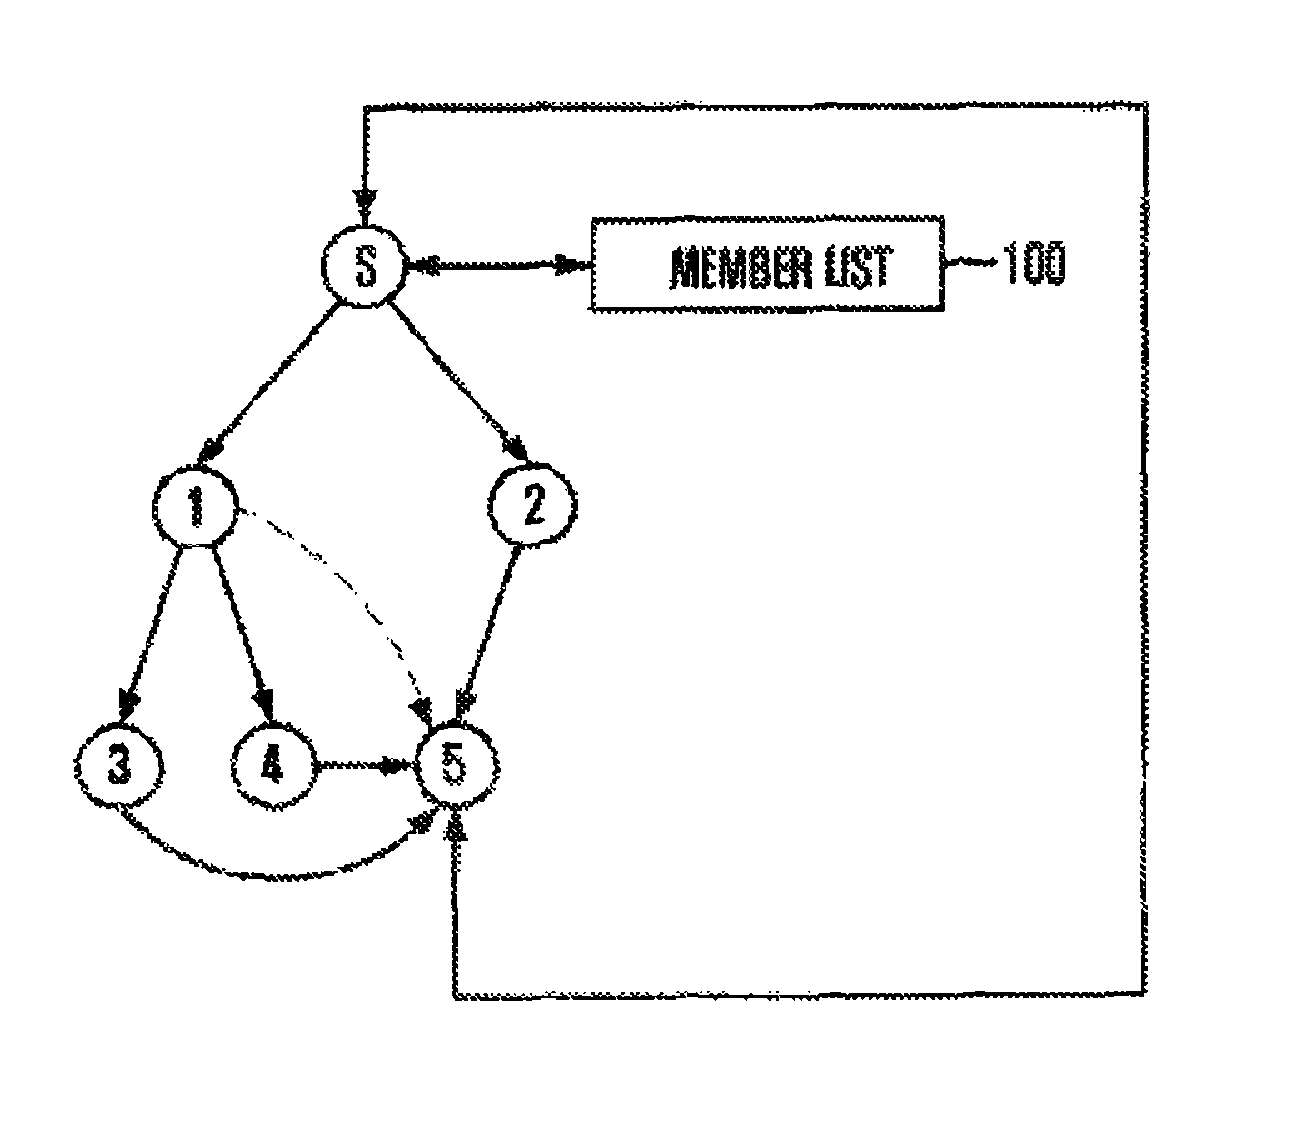 Method for transmitting file based on multiplex forwarder